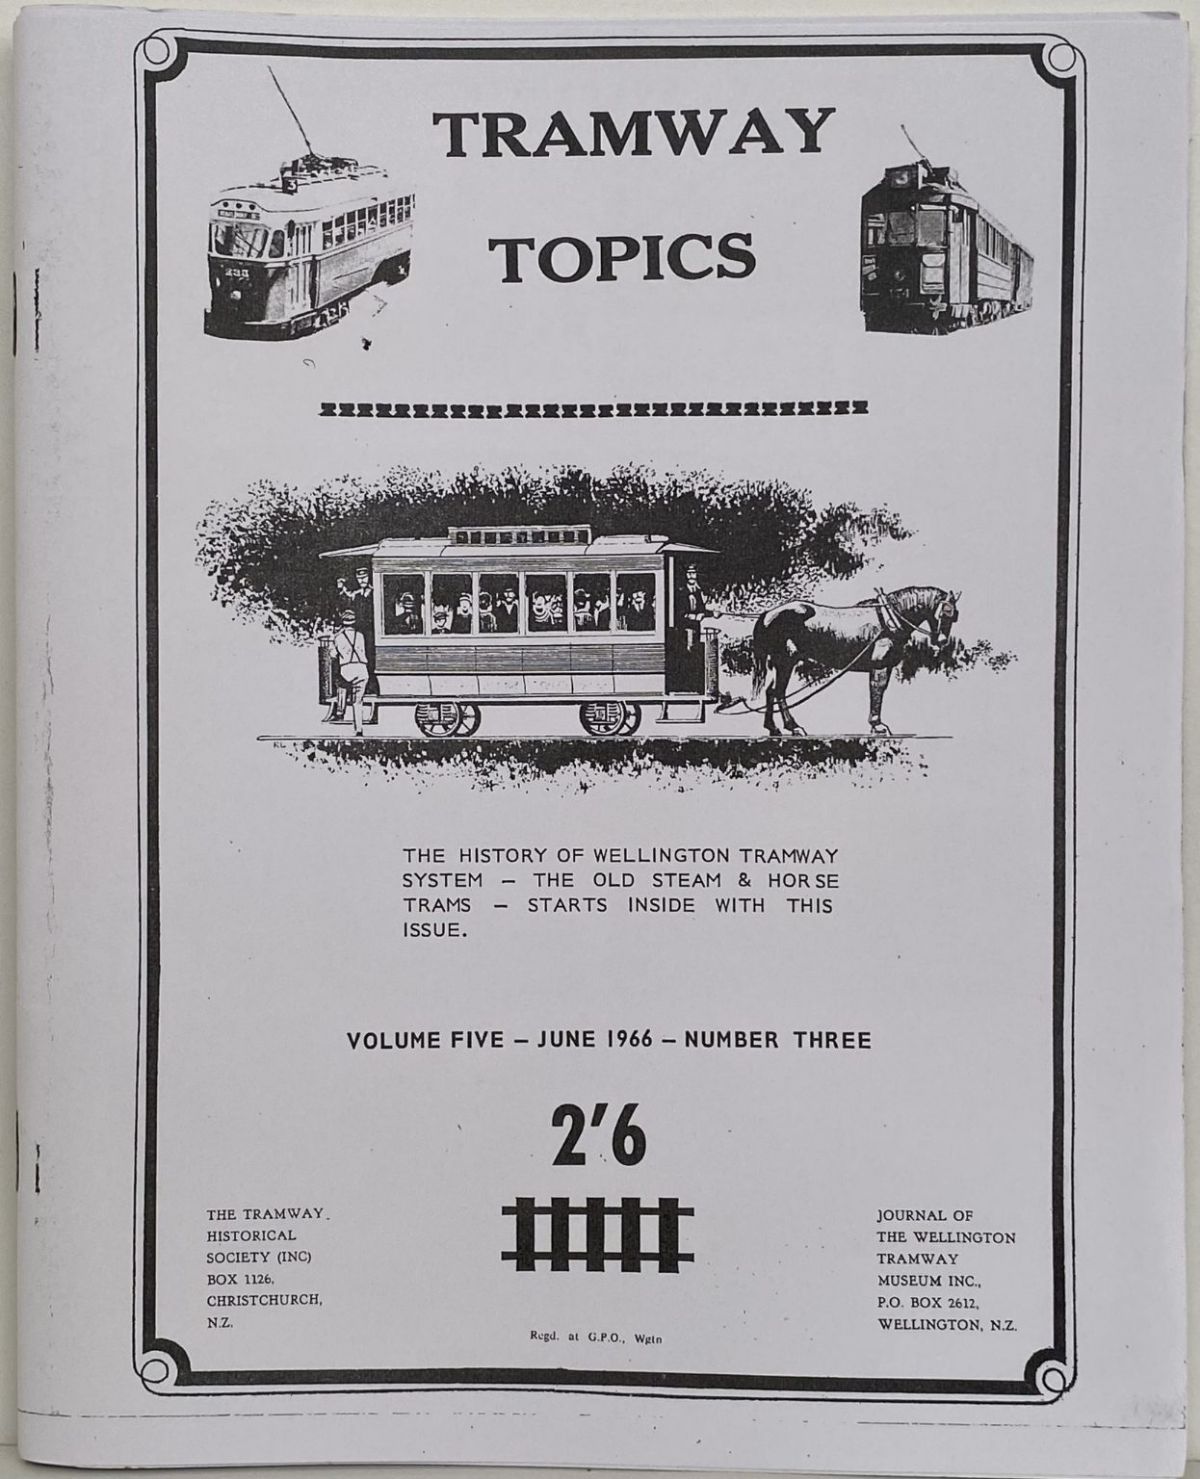 TRAMWAY TOPICS Vol 5, No 3, June 1966